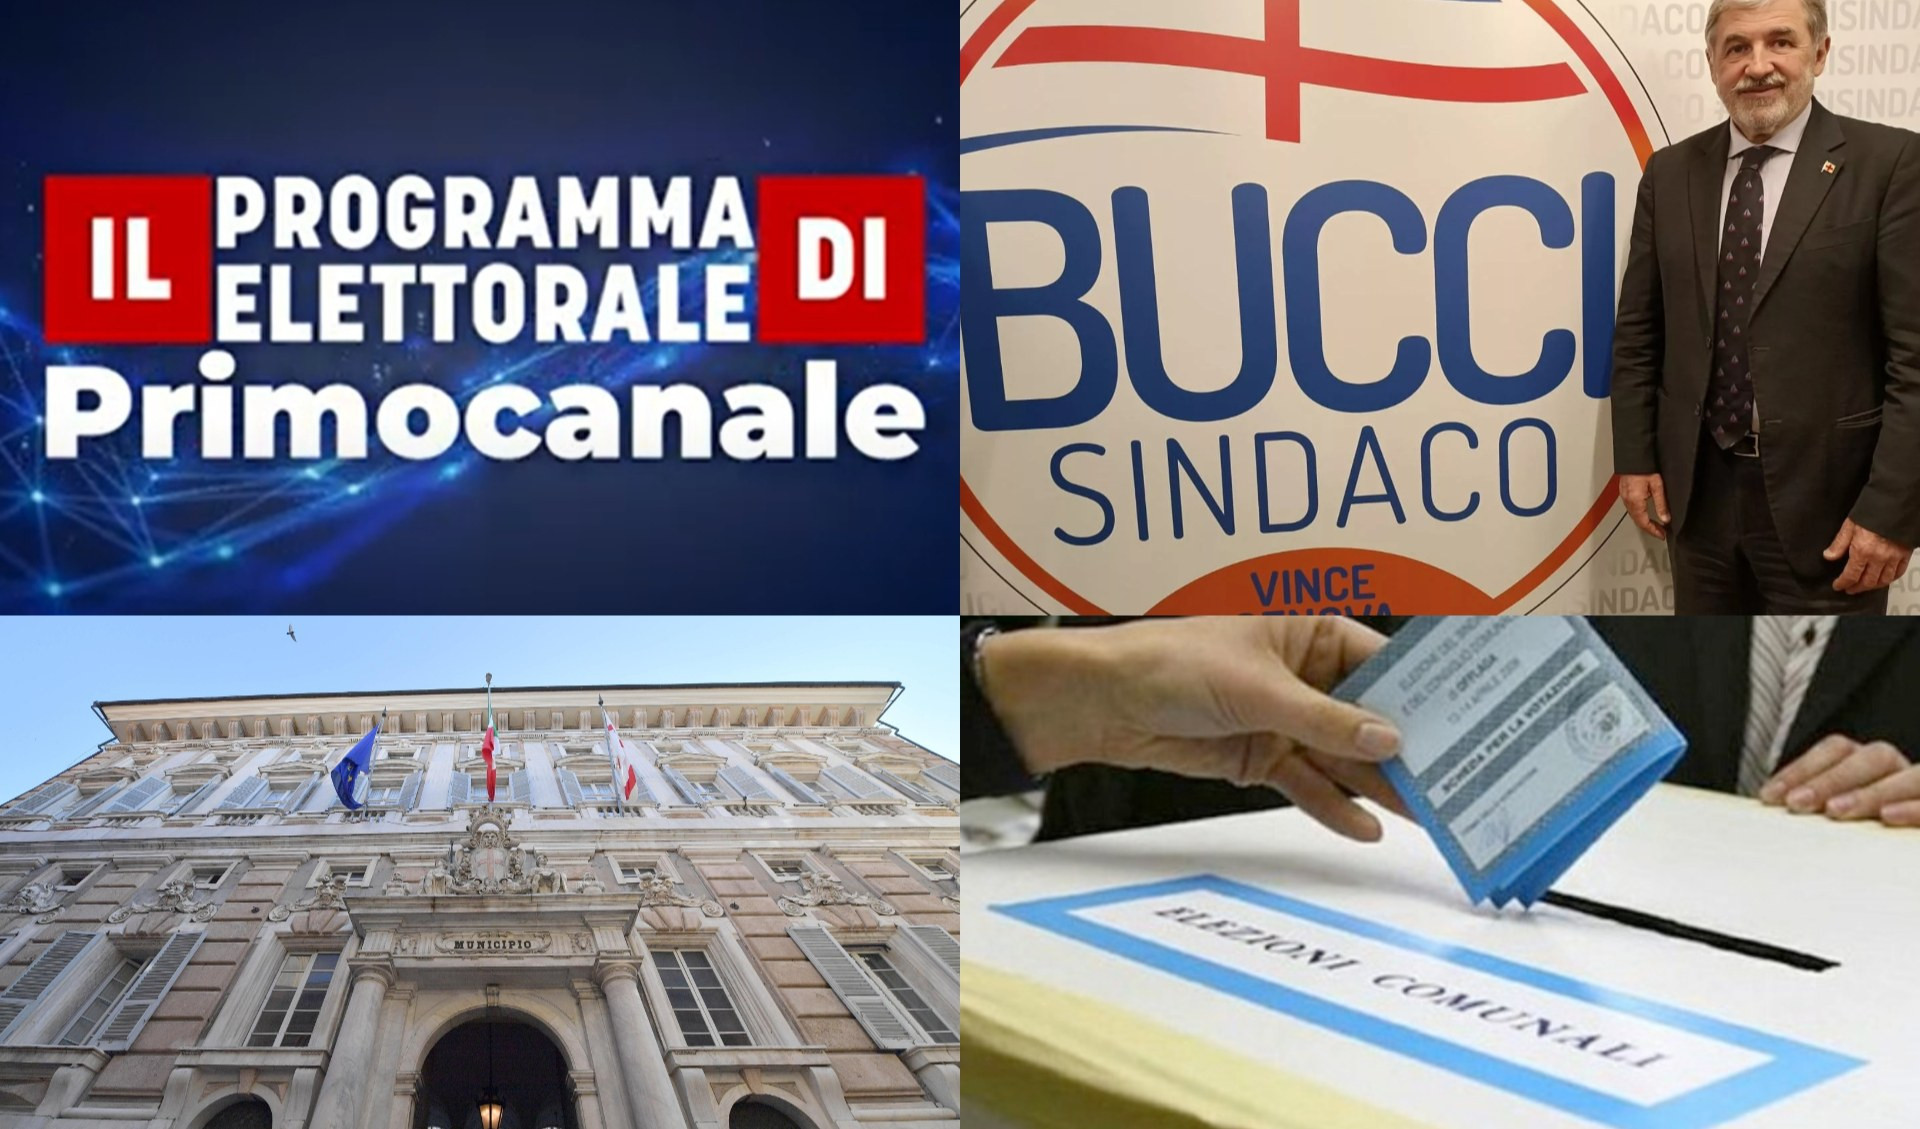 Il Programma elettorale di Primocanale - Genova, le elezioni si avvicinano (puntata 9)